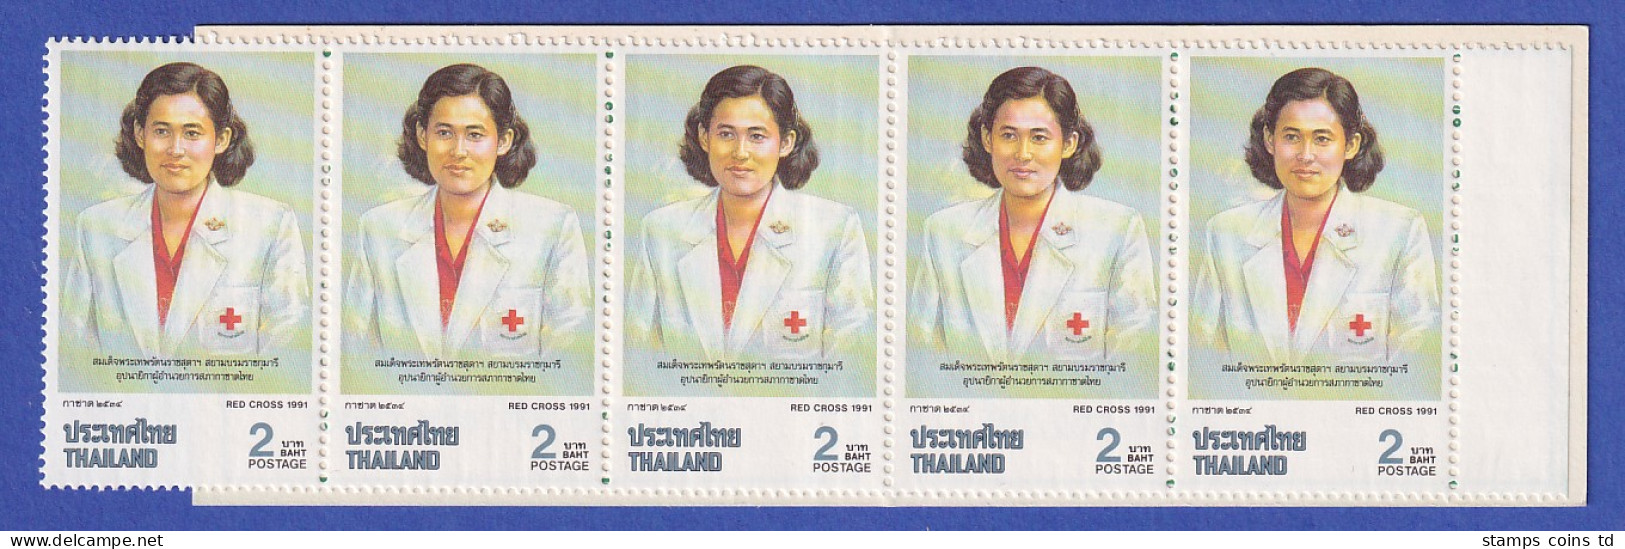 Thailand 1991 Rotes Kreuz Mi.-Nr. 1405 Markenheftchen Postfrisch ** / MNH - Thailand